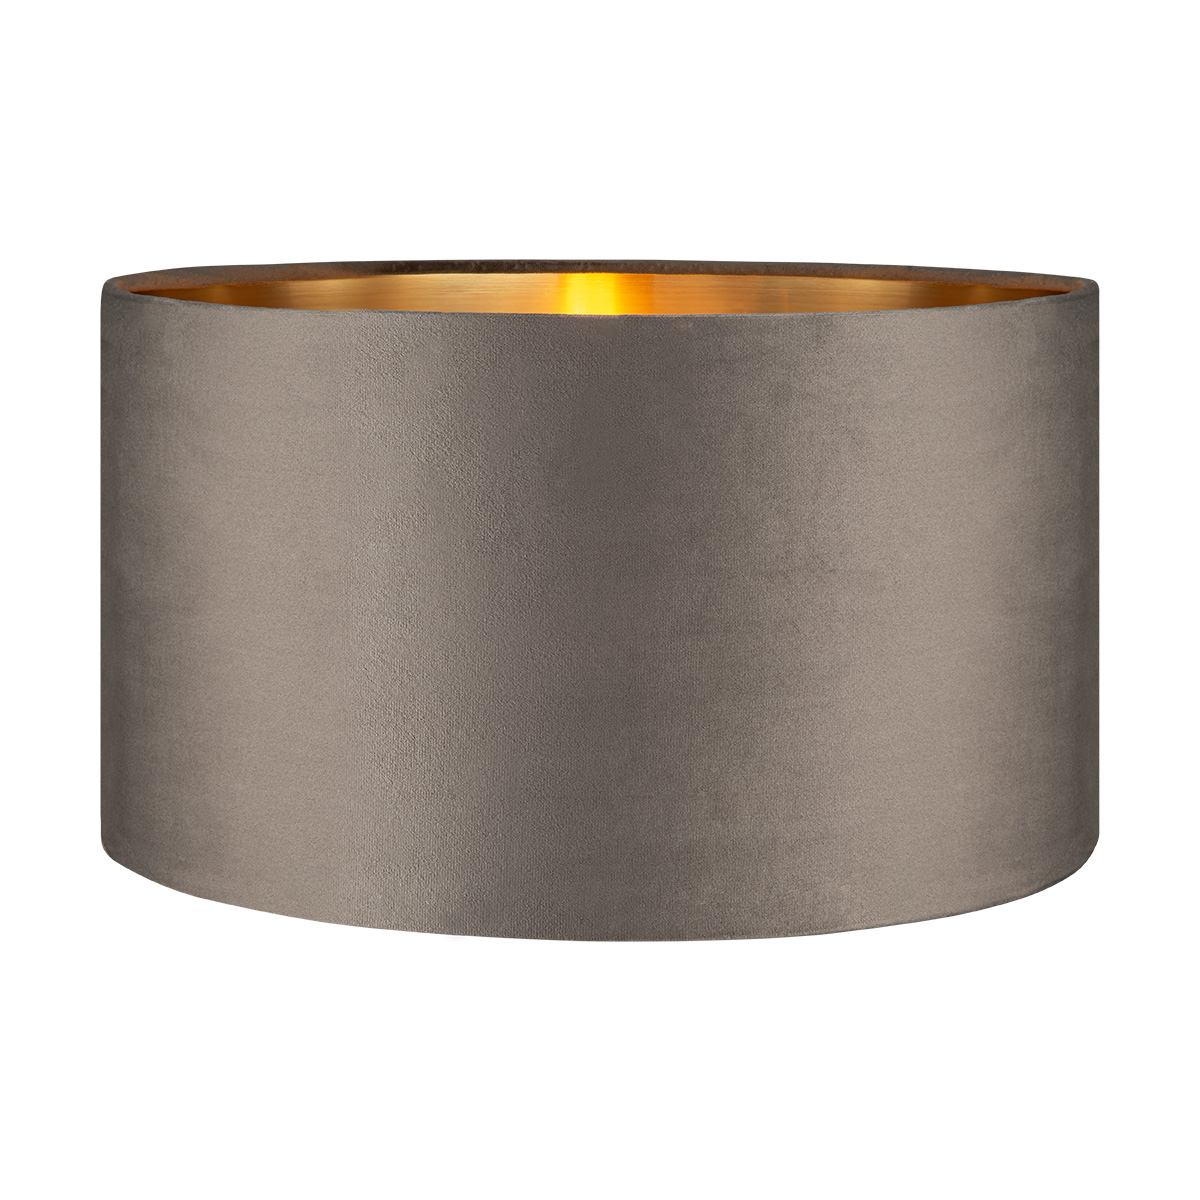 Tangla lighting - TLS7564-40GY - Lampshade - velvet - grey - diameter 40cm - E27